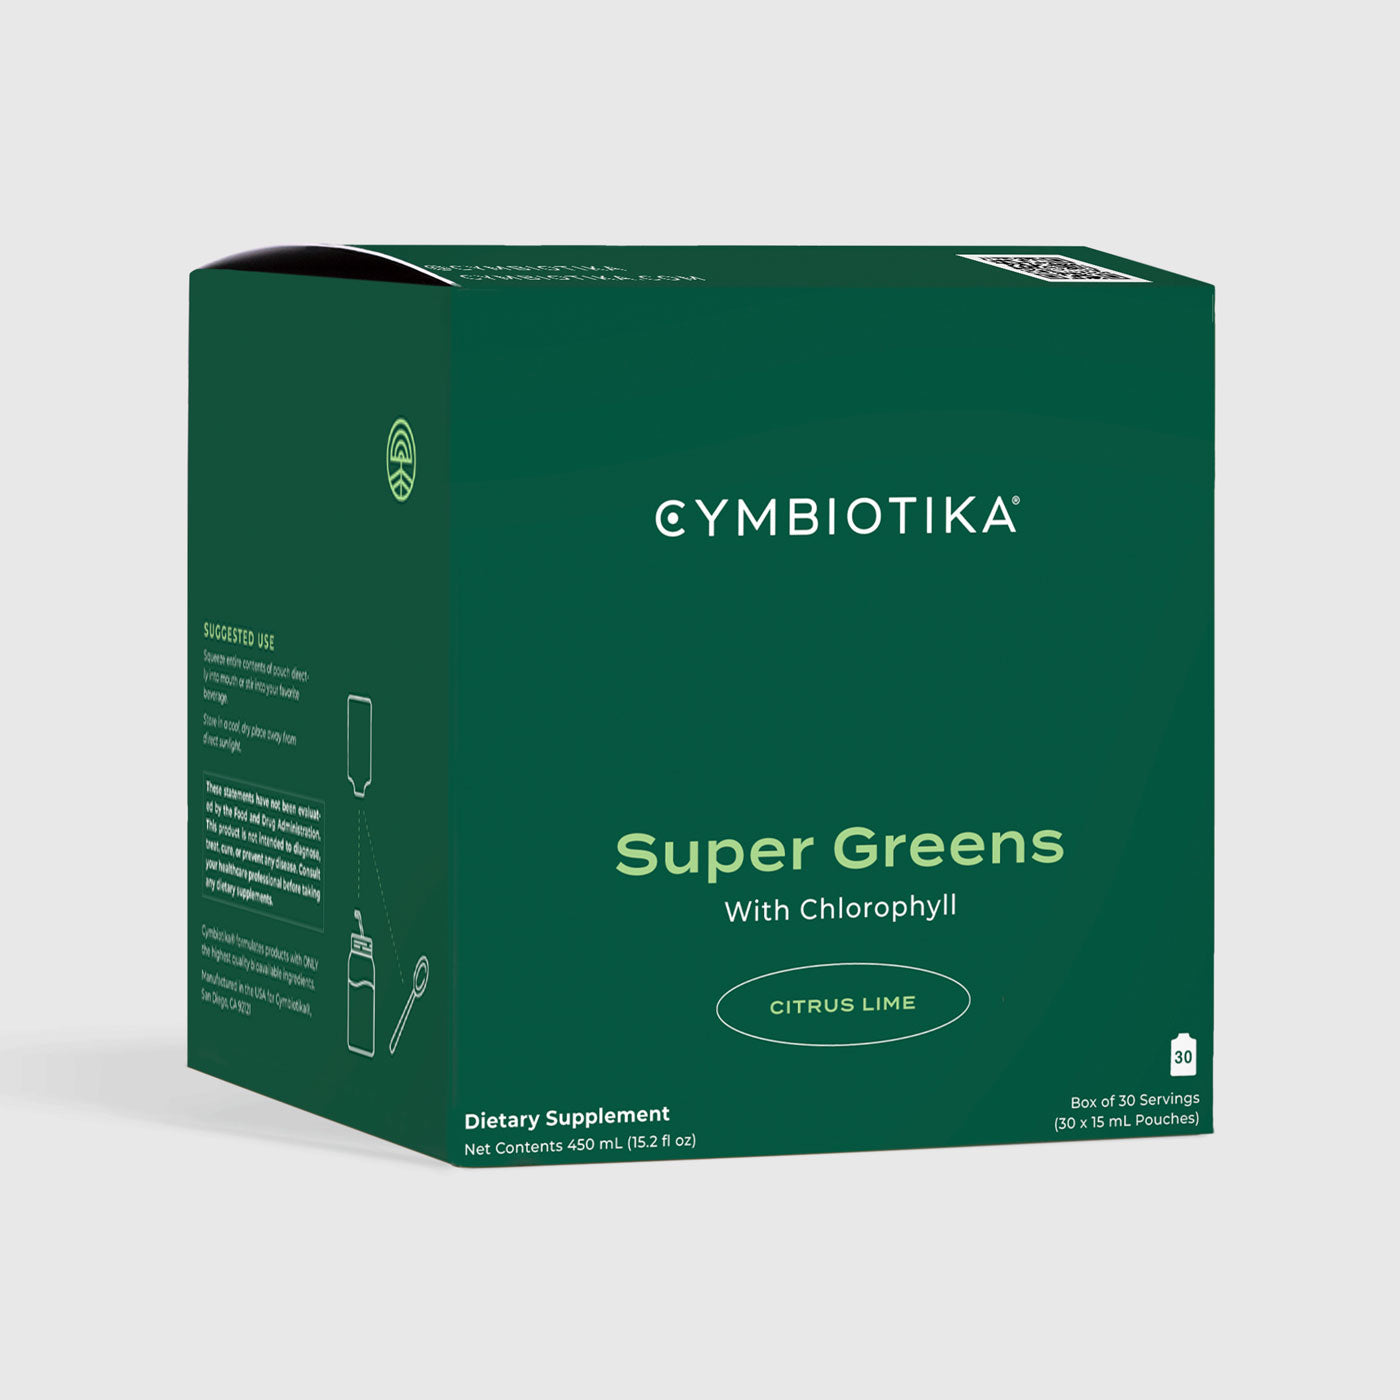 CYMBIOTIKA Super Greens